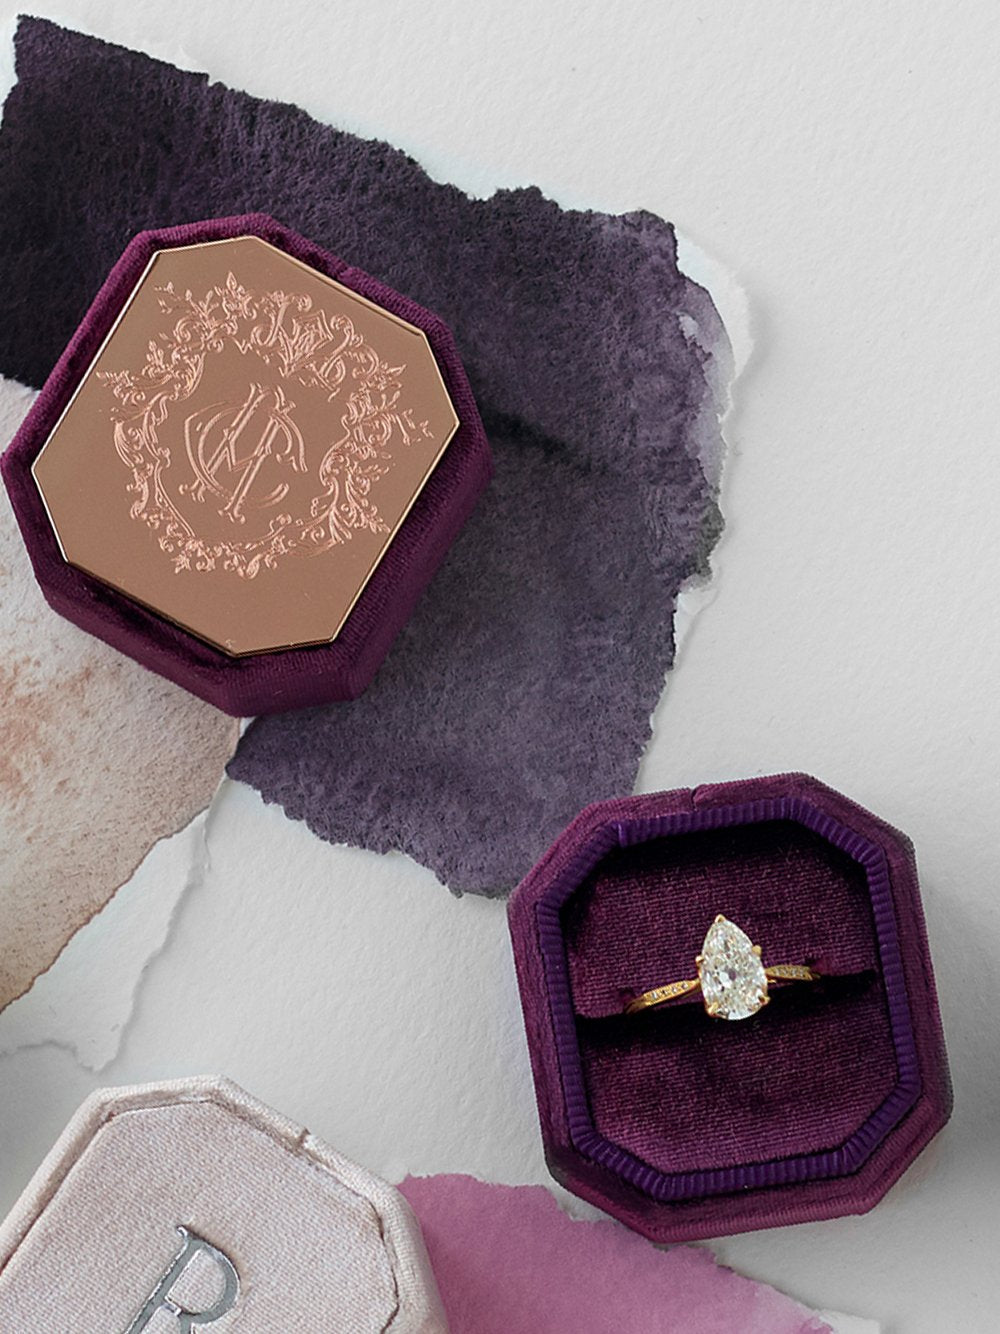 deep purple custom engraving bevel velvet ring box